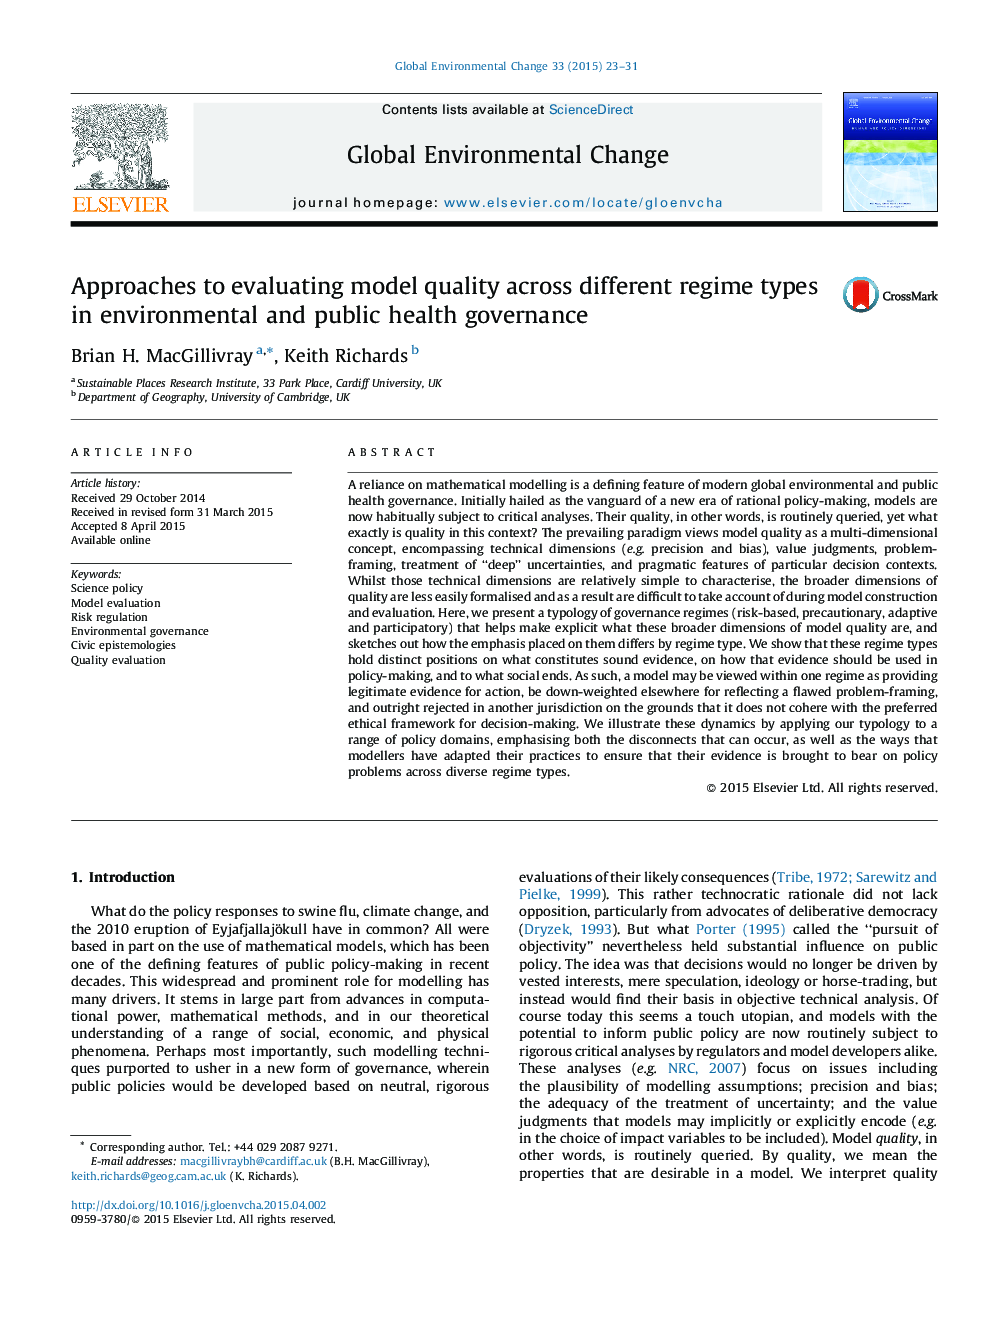 رویکردهای ارزیابی کیفیت مدل در بین انواع رژیم های مختلف در مدیریت محیط زیست و بهداشت عمومی 